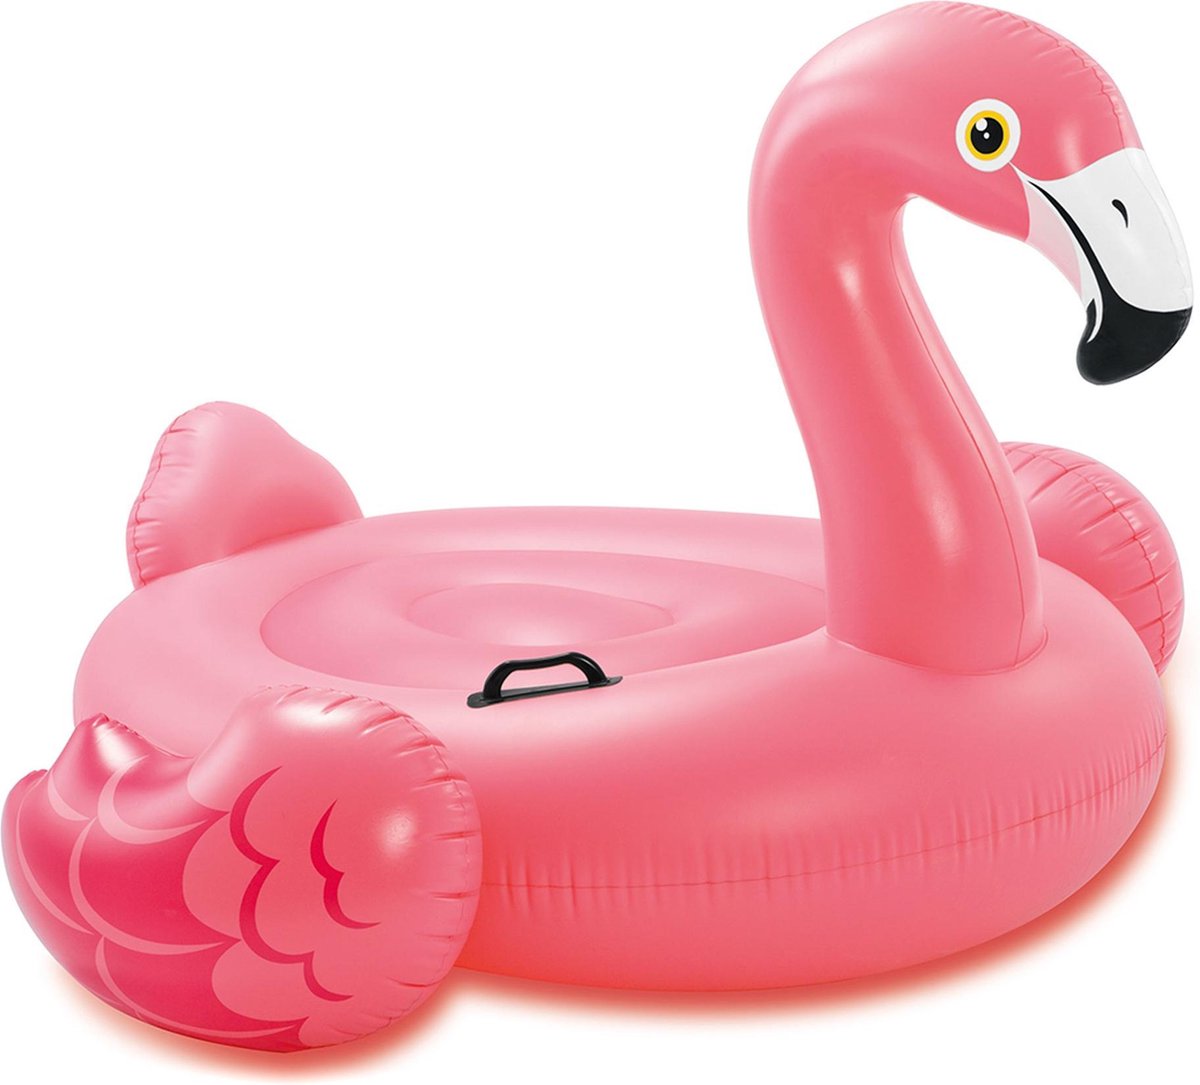 Intex flamingo